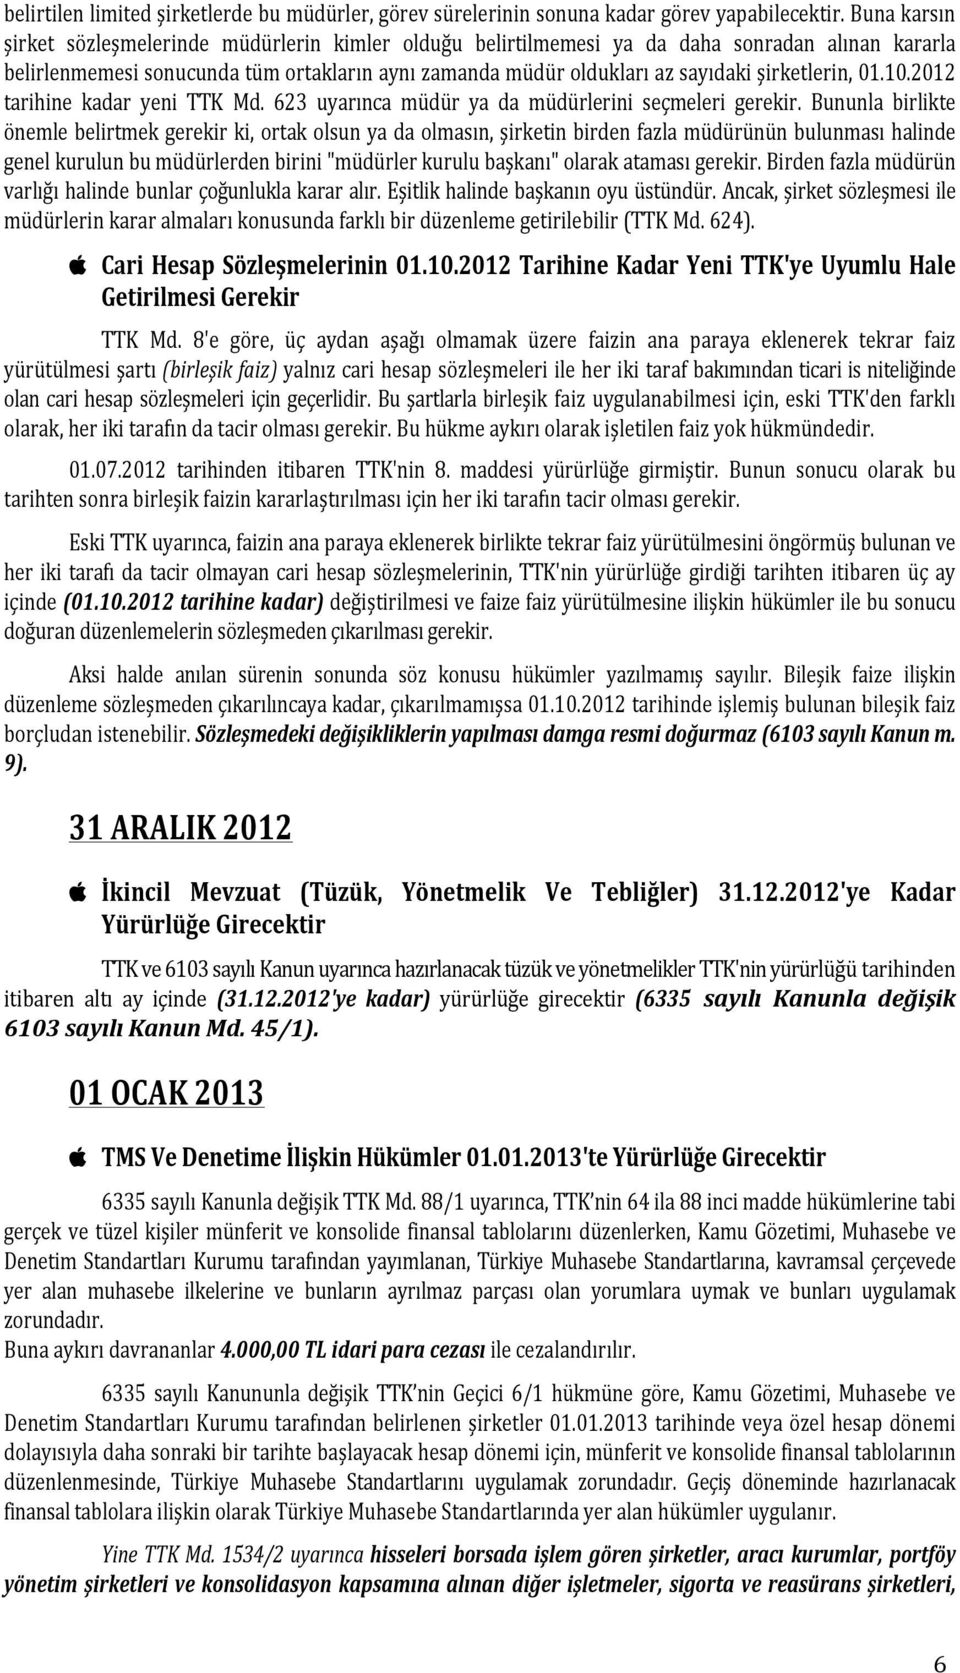 şirketlerin, 01.10.2012 tarihine kadar yeni TTK Md. 623 uyarınca müdür ya da müdürlerini seçmeleri gerekir.